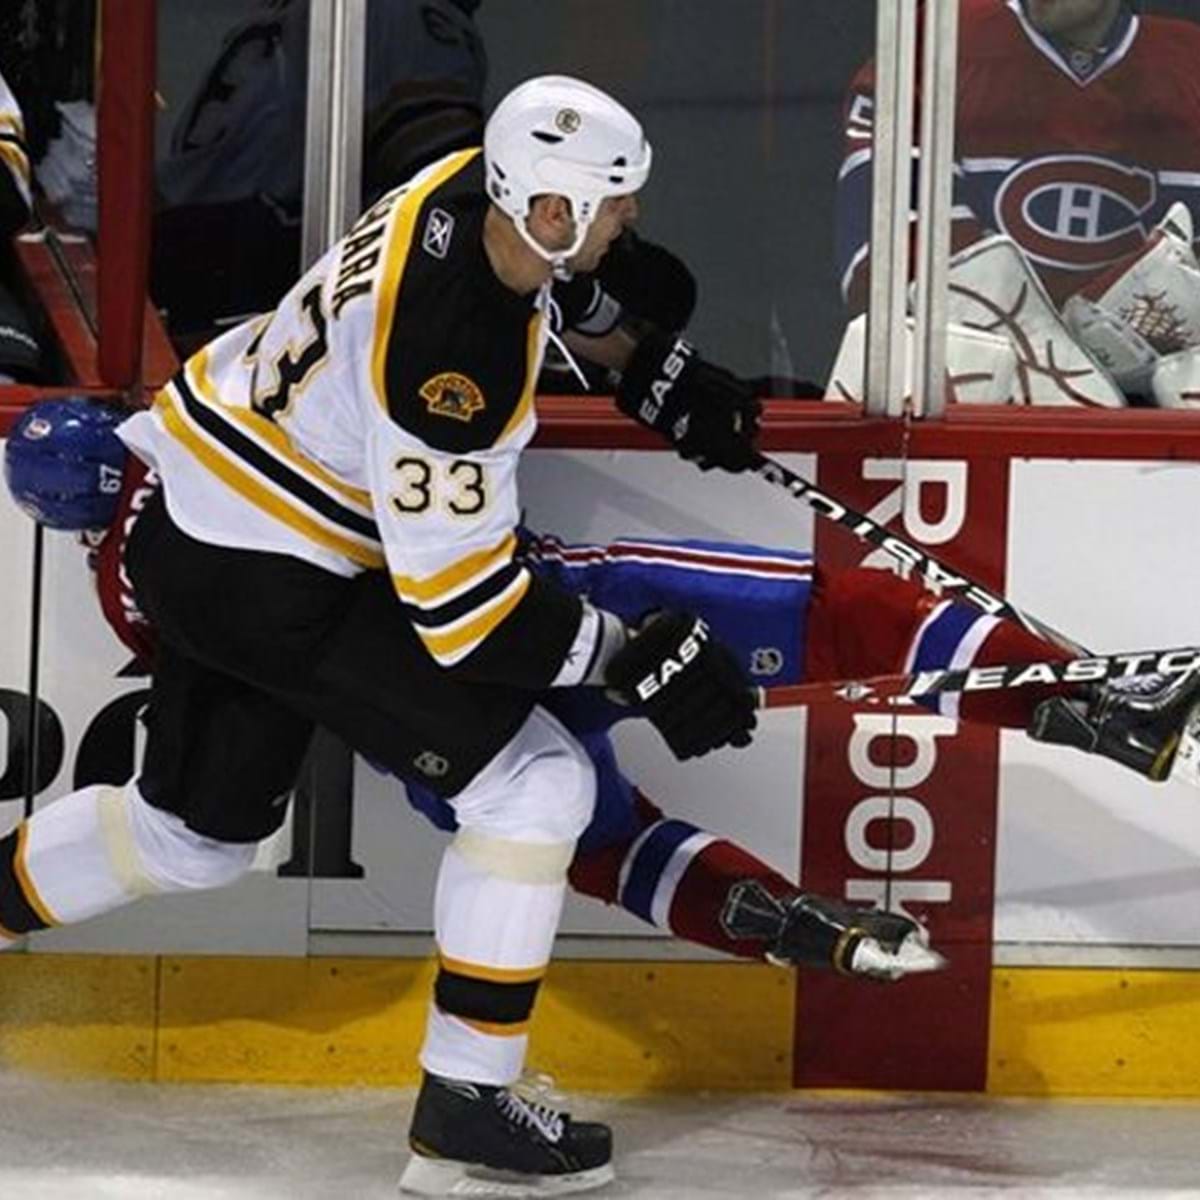 Jogador da NHL recebe suspensão de 27 jogos por violência